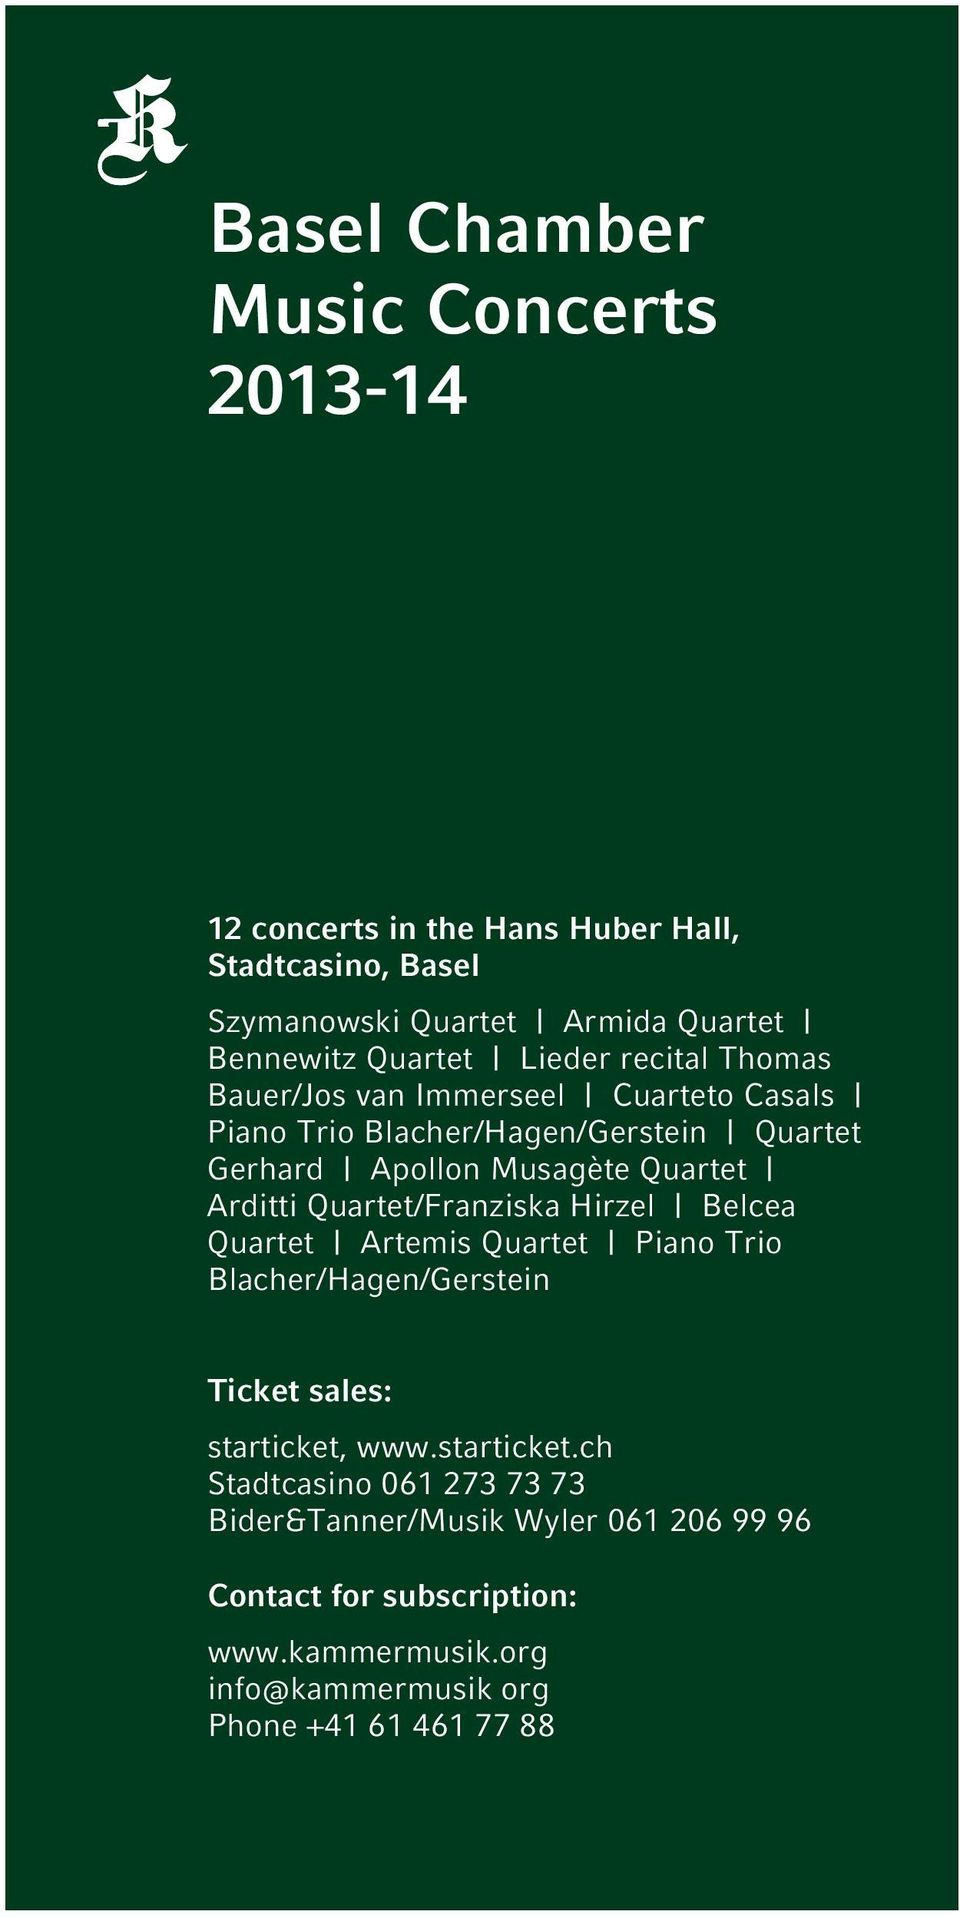 Quartet/Franziska Hirzel Belcea Quartet Artemis Quartet Piano Trio Blacher/Hagen/Gerstein Ticket sales: starticket,